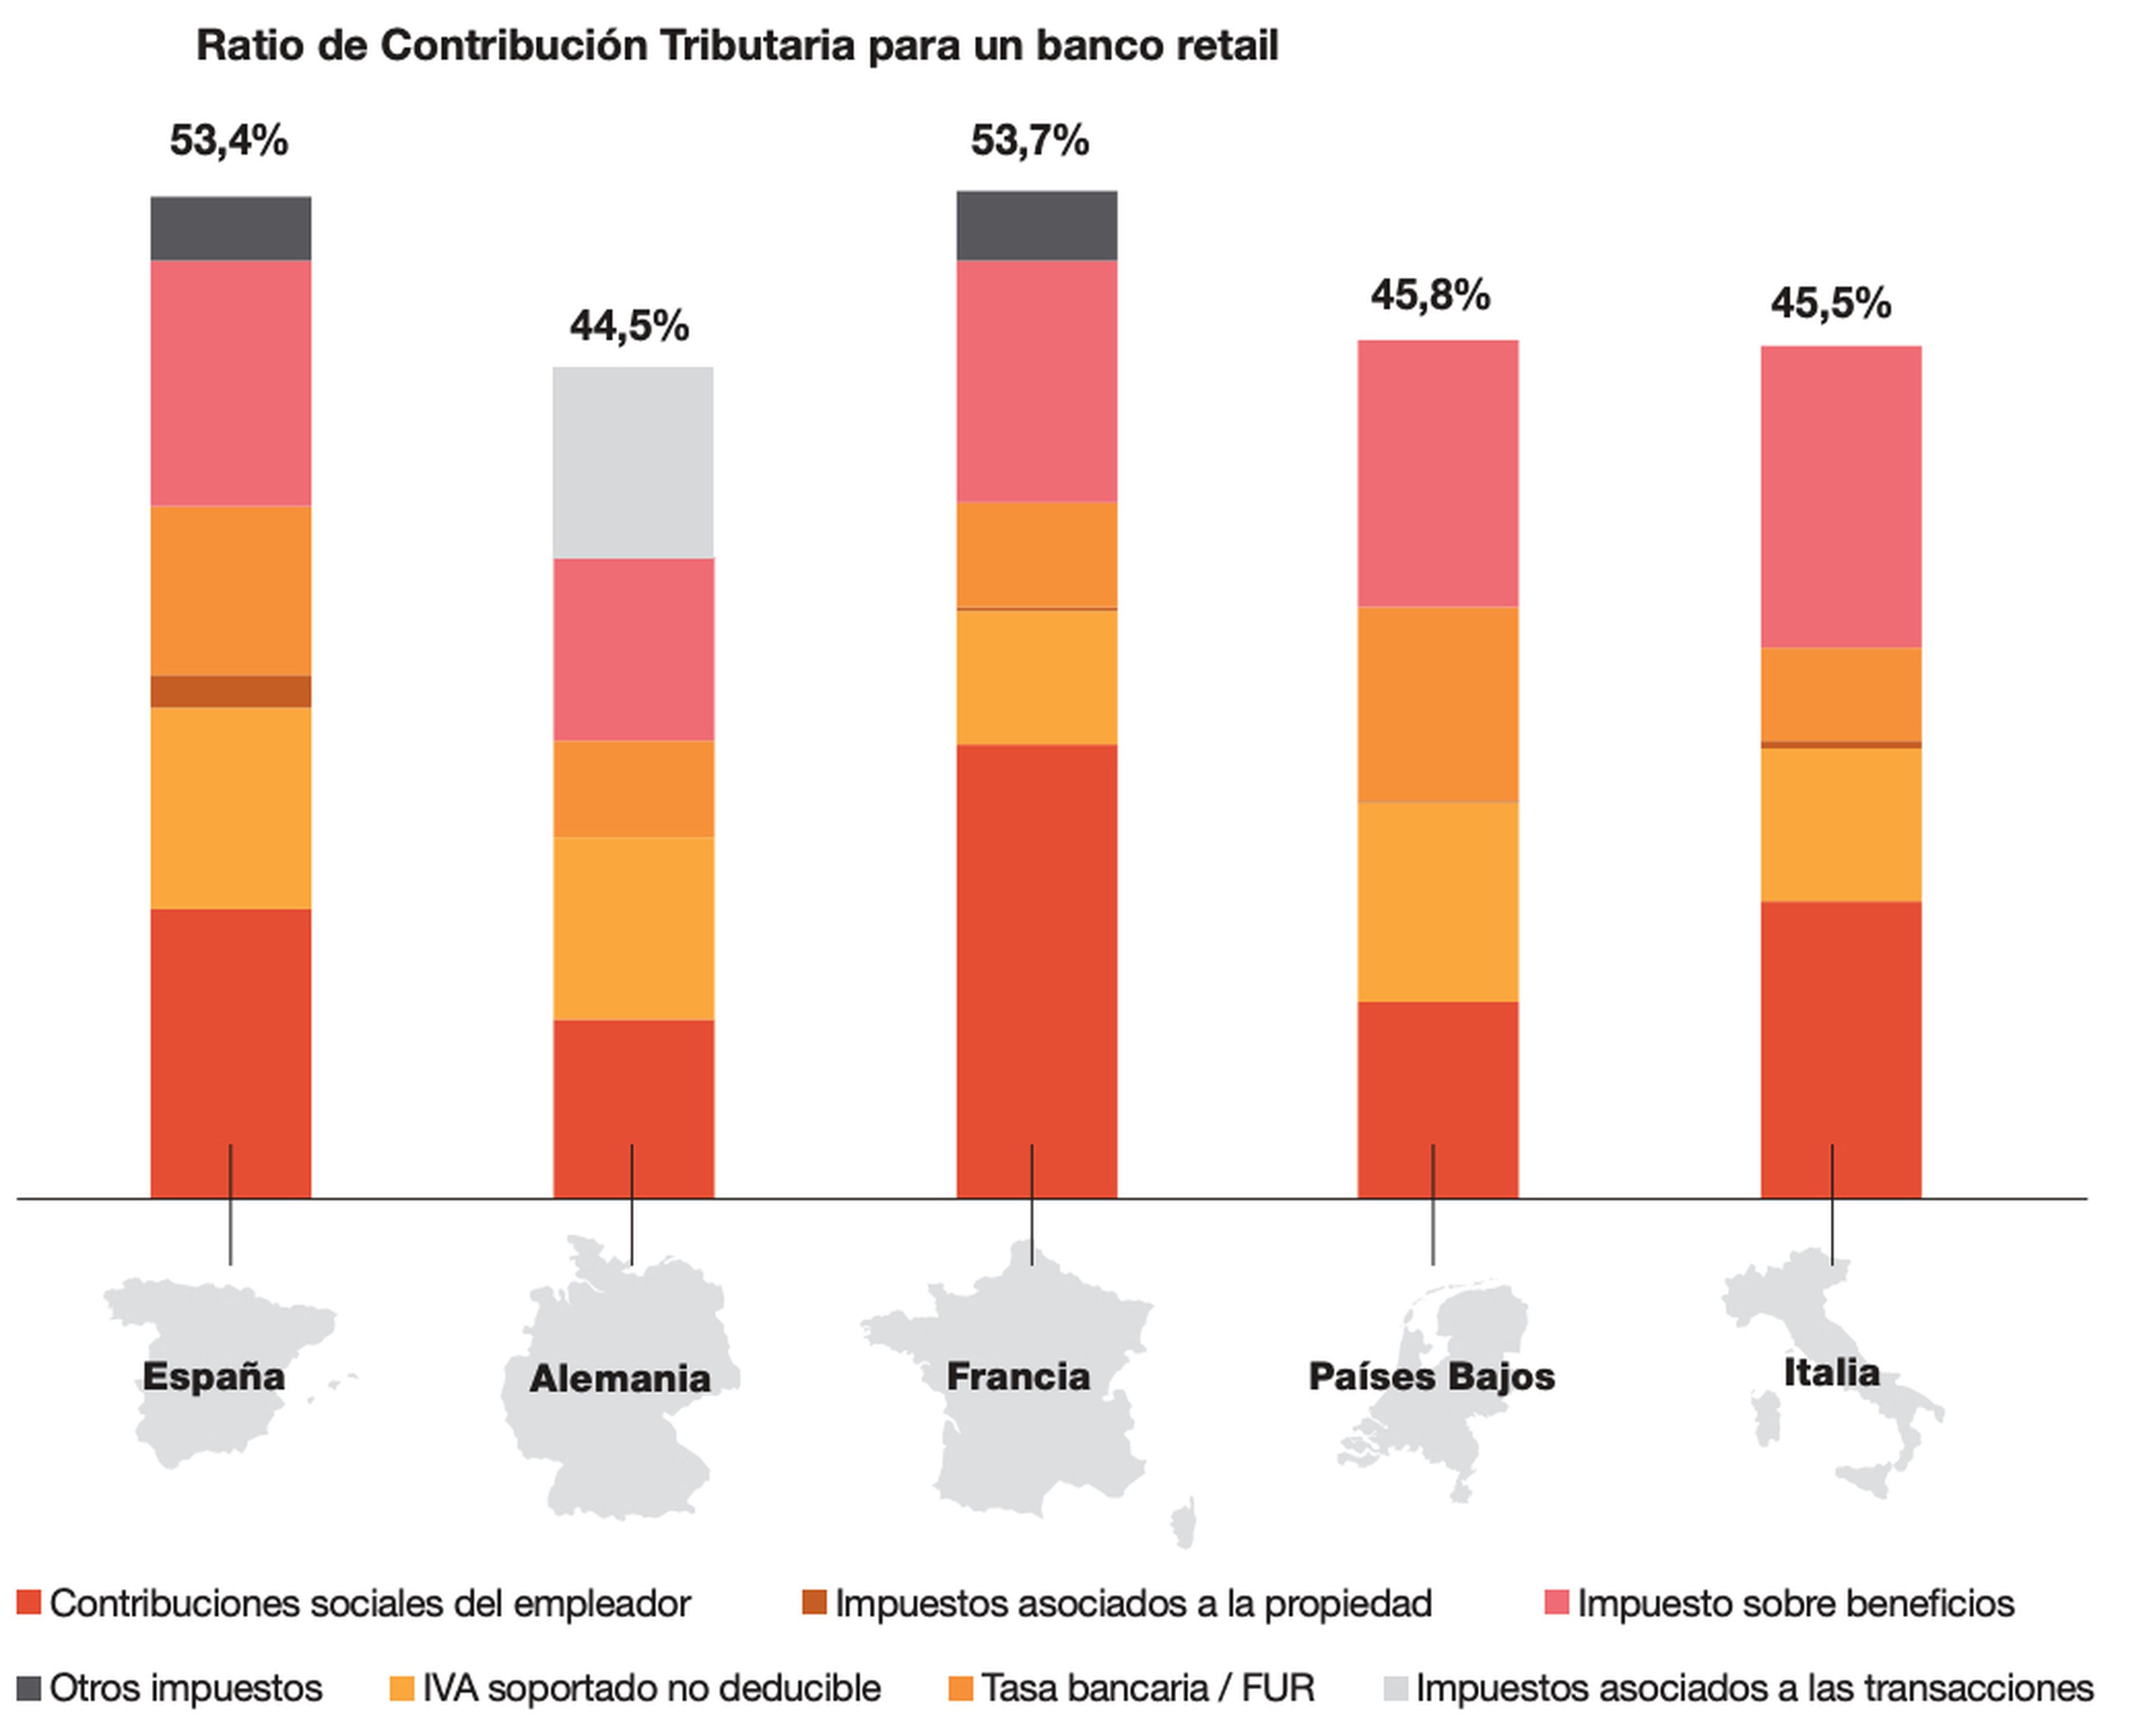 Ratio de contribución tributaria para un banco modelo de España en diferentes países de la Unión Europea.